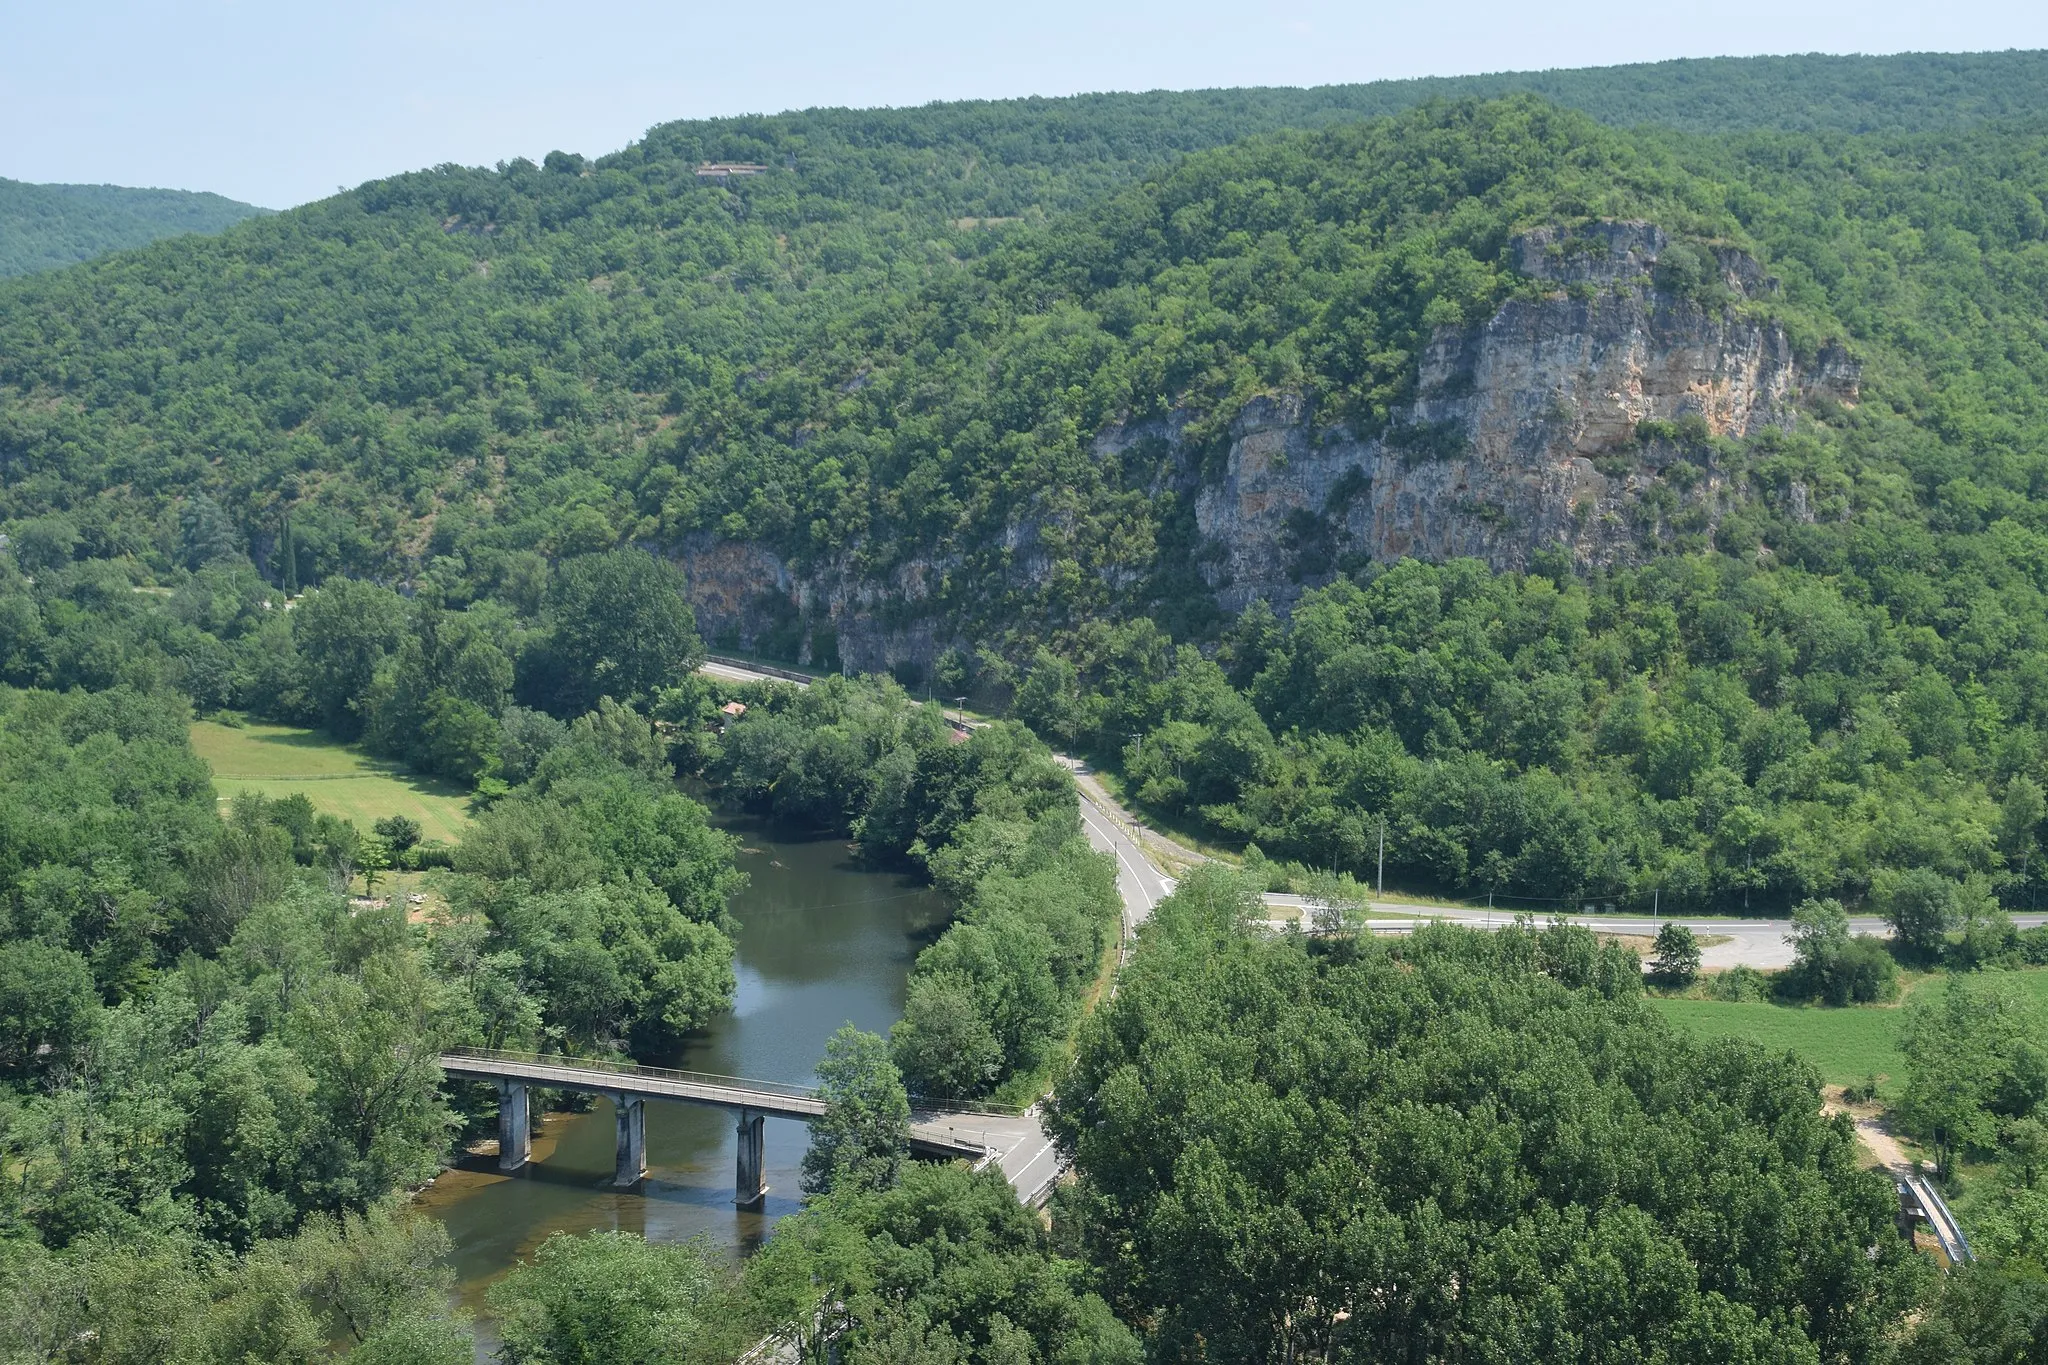 La rivière Aveyron à Bruniquel, Tarn-et-Garonne, Occitanie, France.  Krzysztof Golik https://creativecommons.org/licenses/by-sa/4.0/deed.en